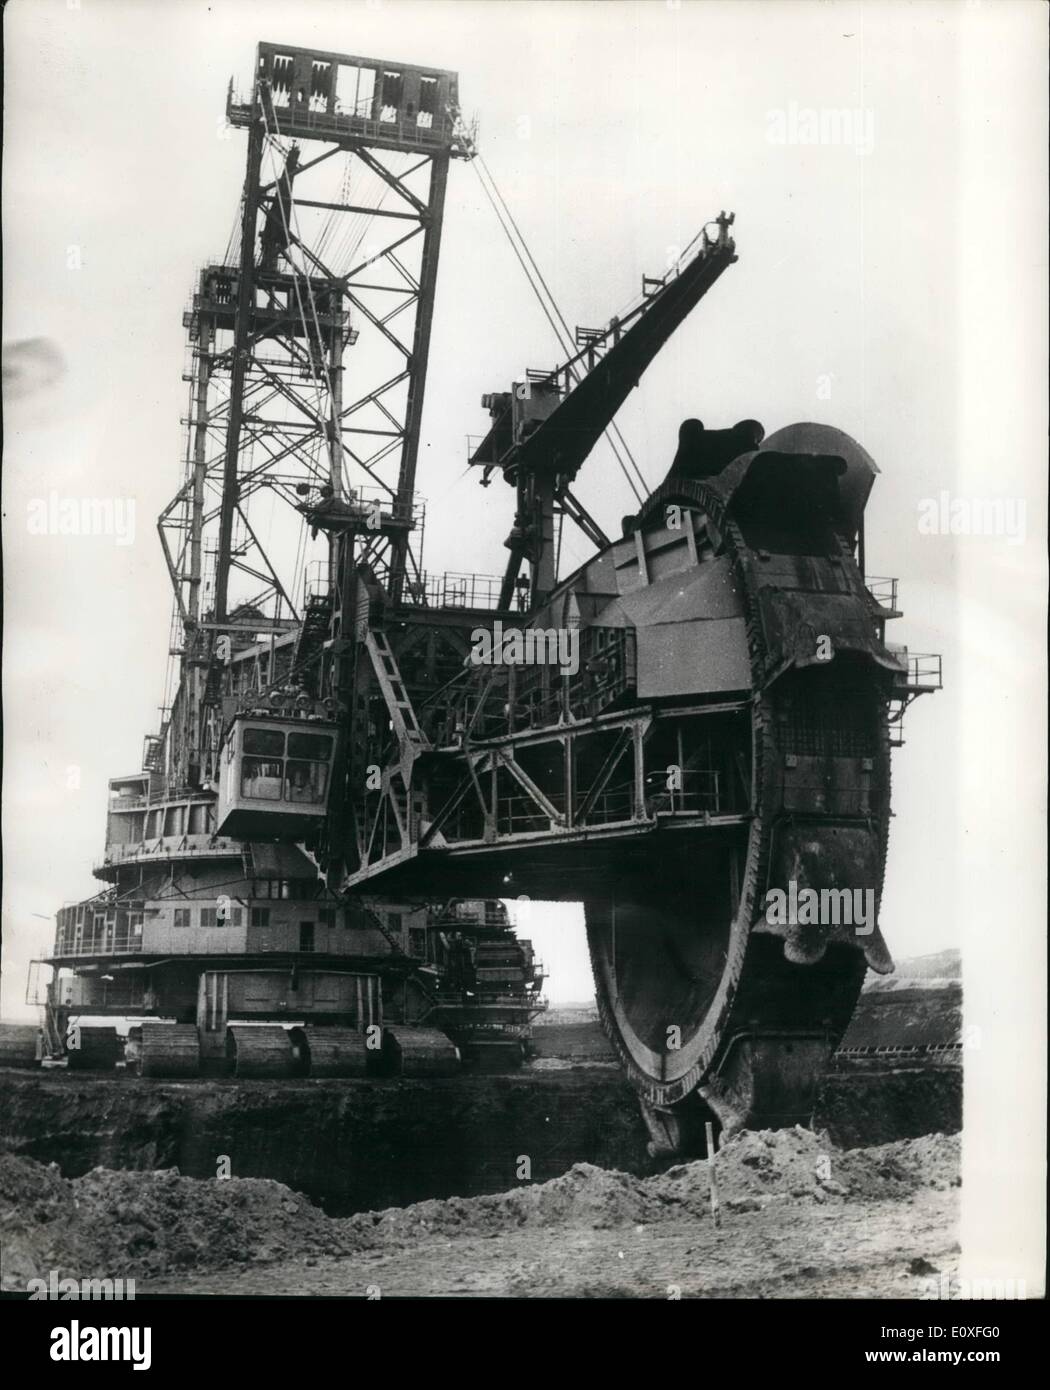 Agosto 08, 1966 - Il più grande del mondo di Draga - Escavatore (striscia Miner) il più grande del mondo di draga, sia per le misurazioni e le prestazioni, è stata messa in funzione presso il a cielo aperto funziona su un marrone deposito di carbone, chiamato ''Fortuna'', Vicino Bergheim-Erft, Germania. Il mostro di acciaio pesa quasi 7.600 tonnellate - la sua lunghezza è di 210 metri e la sua altezza di 73 metri. La ruota a palette è di per sé più grande di una casa. Sette persone sono necessari per far funzionare la draga, che è in grado di rimuovere un giorno di uscita di 220.000 tonnellate in 20 ore Foto Stock